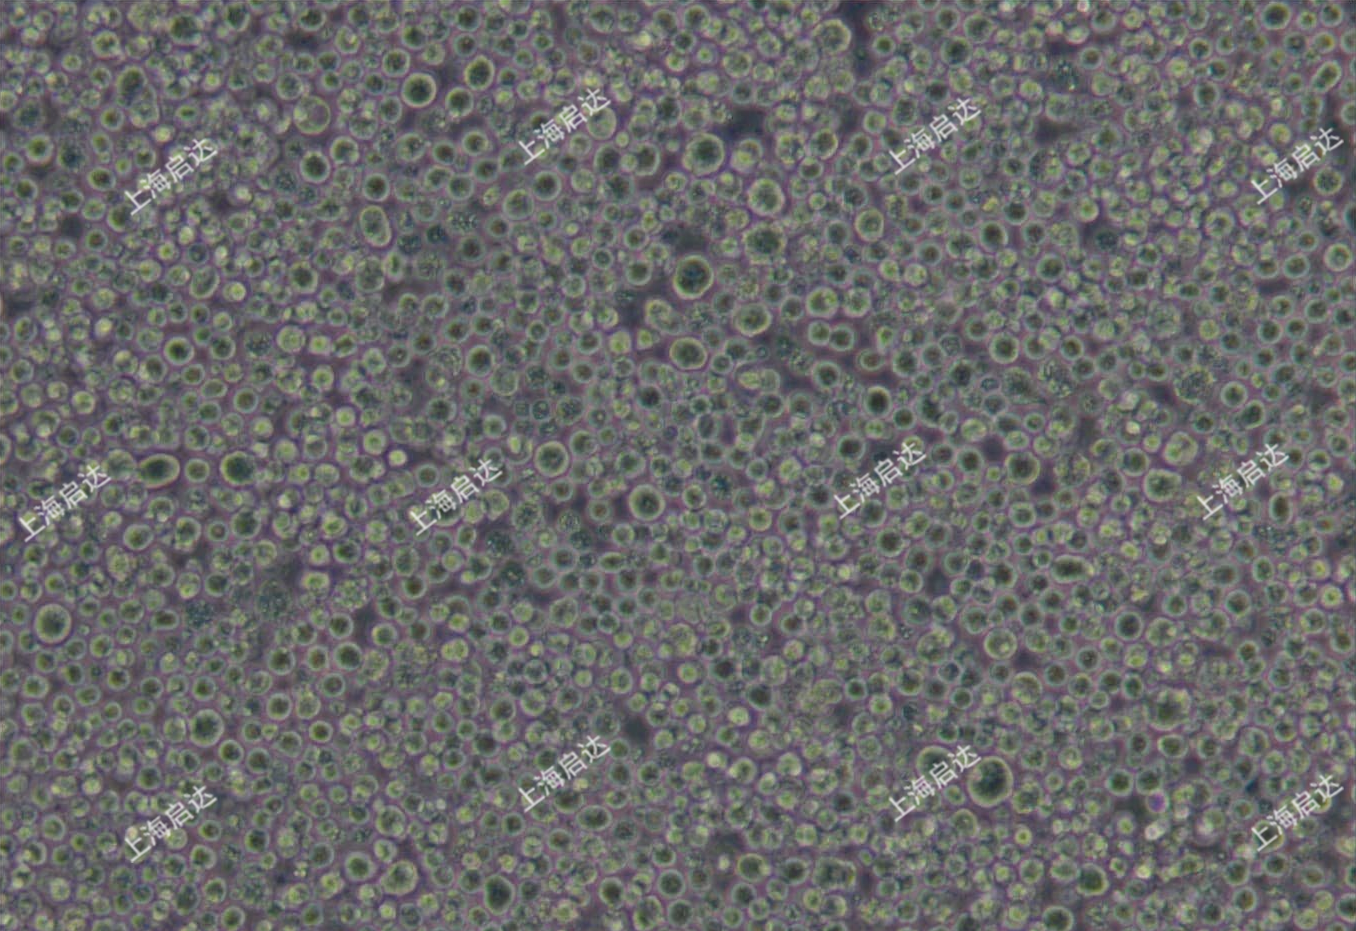 P3X63Ag8.653小鼠骨髓瘤细胞